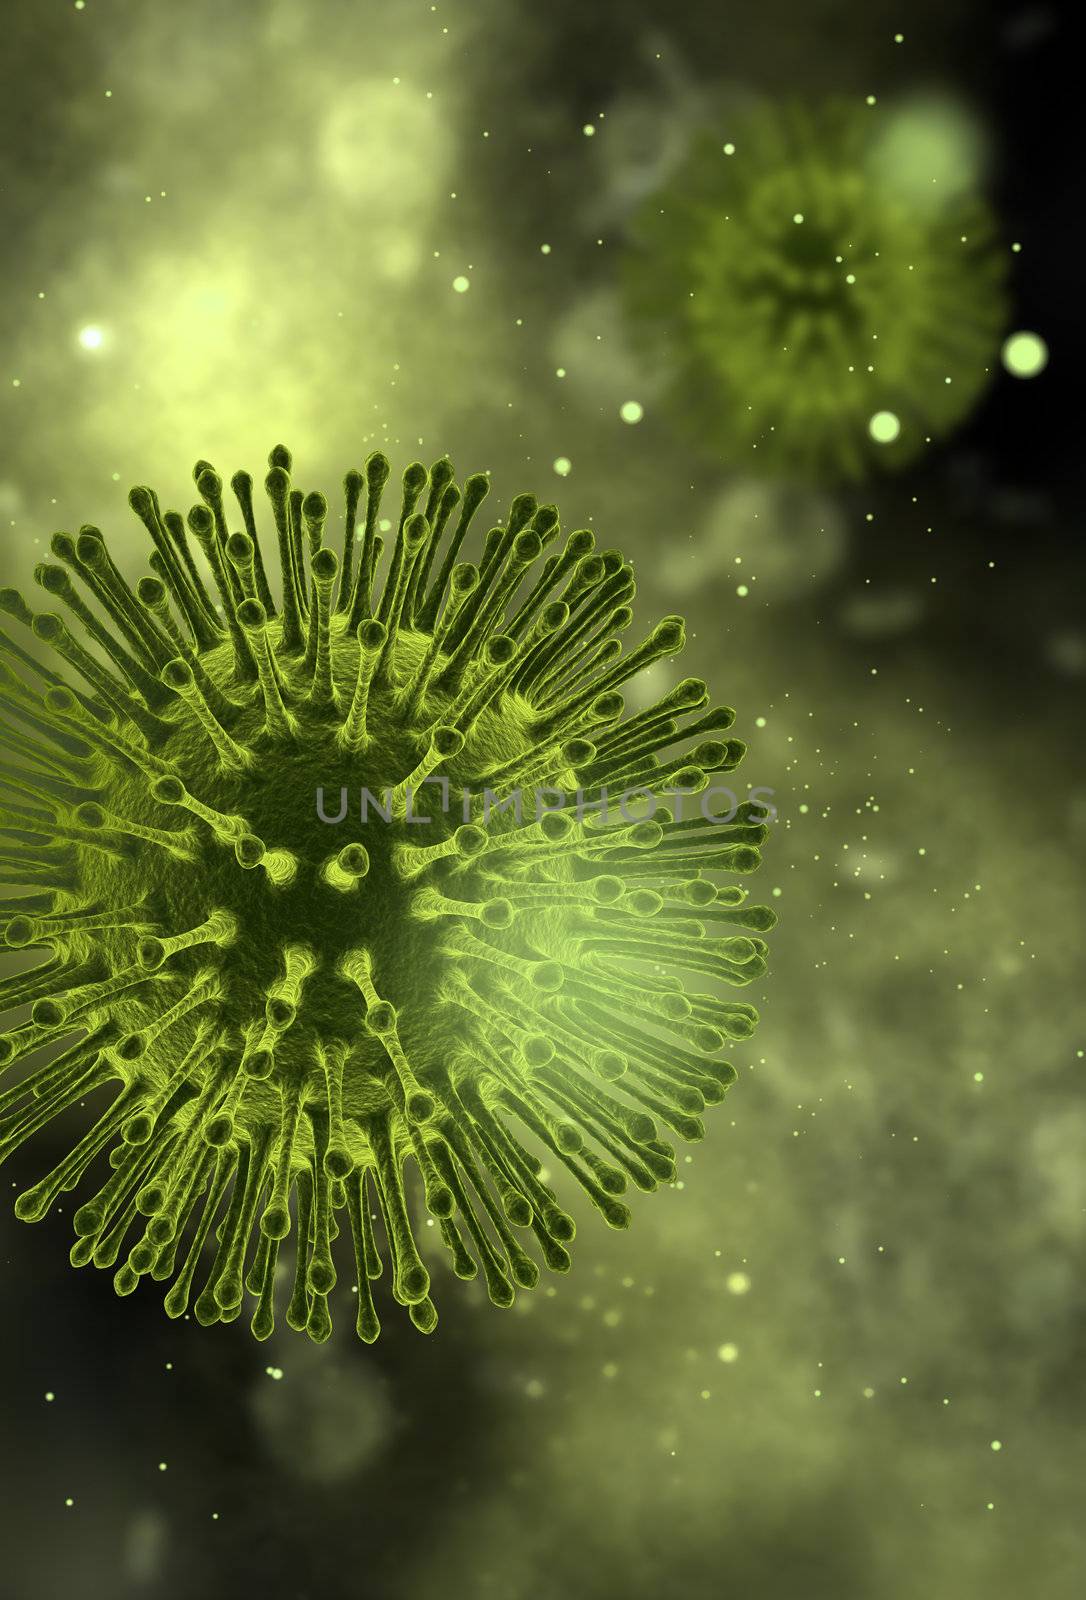 Virus macro view CGI